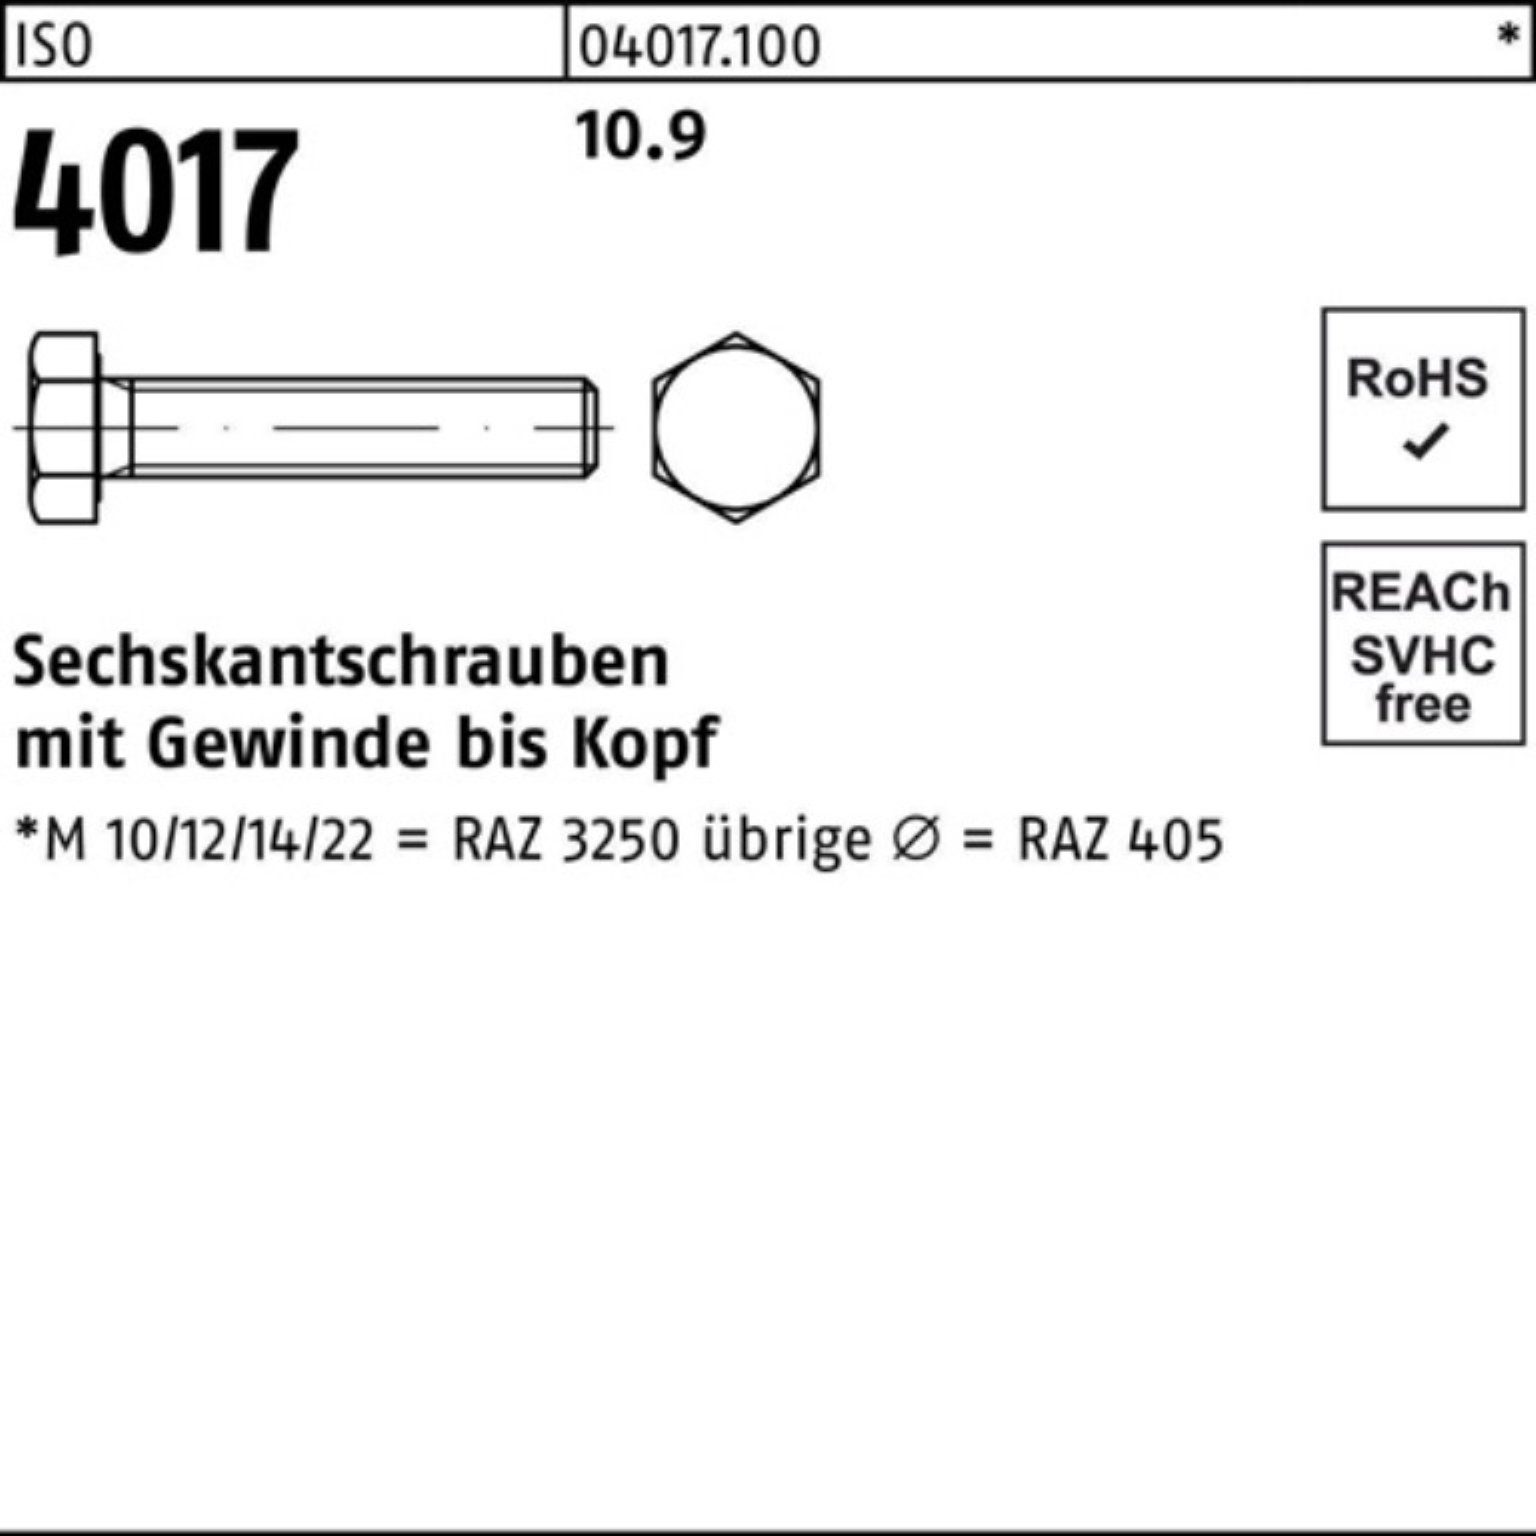 Sechskantschraube VG 10 60 Pack 4017 ISO ISO Sechskantschraube 40 100er 10.9 Bufab M27x Stück